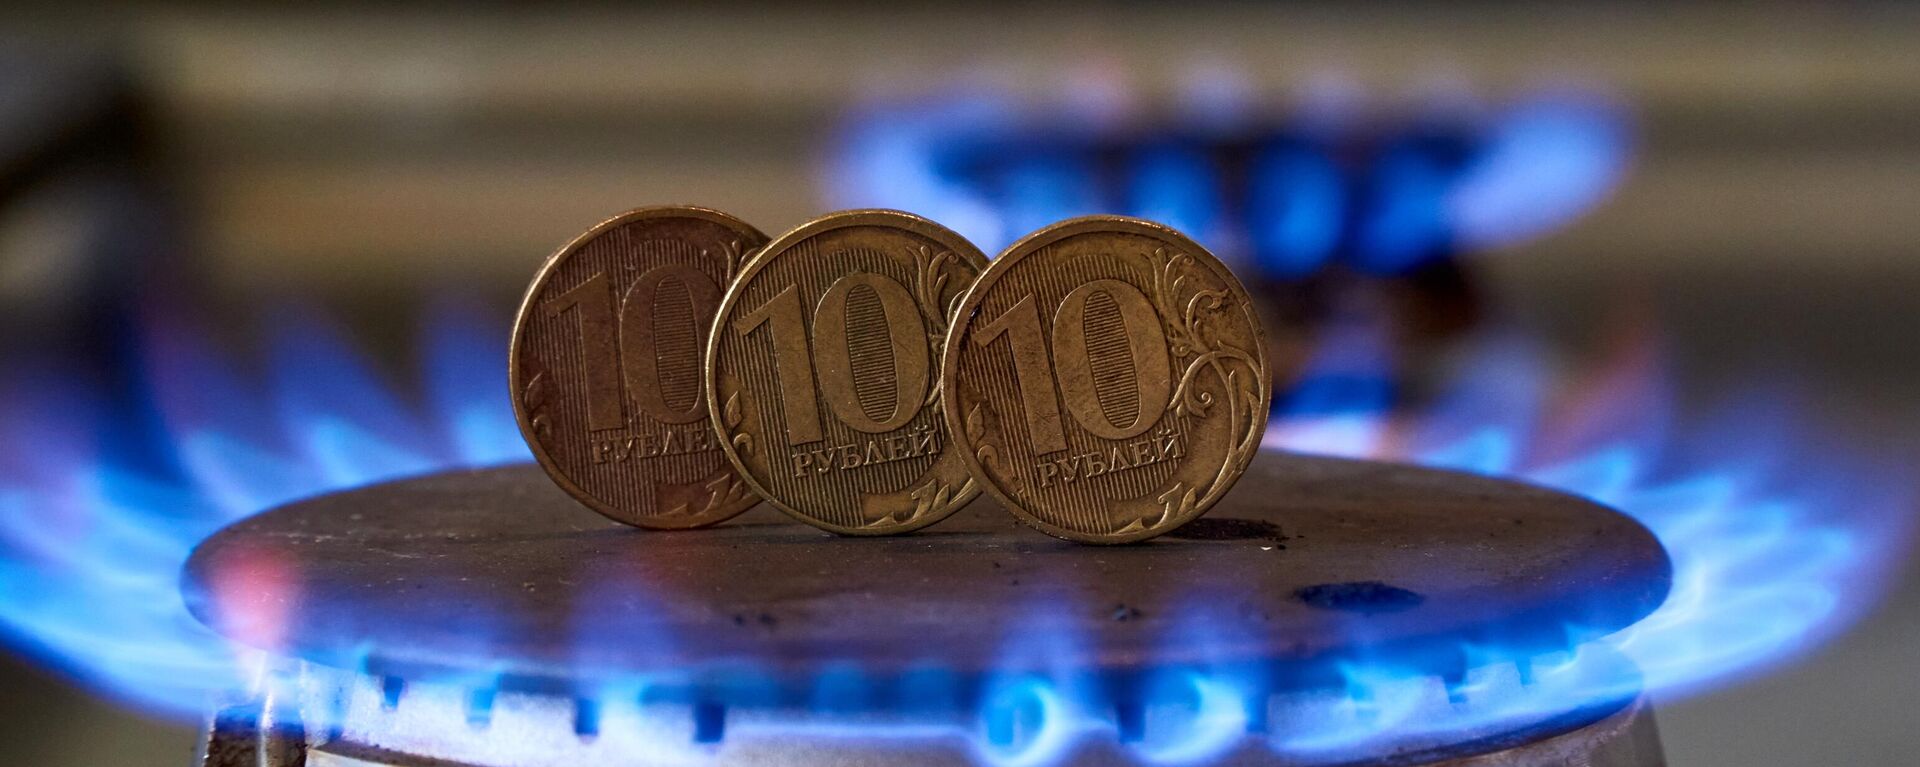 Монеты номиналам десять рублей на газовой плите - Sputnik Latvija, 1920, 02.04.2022